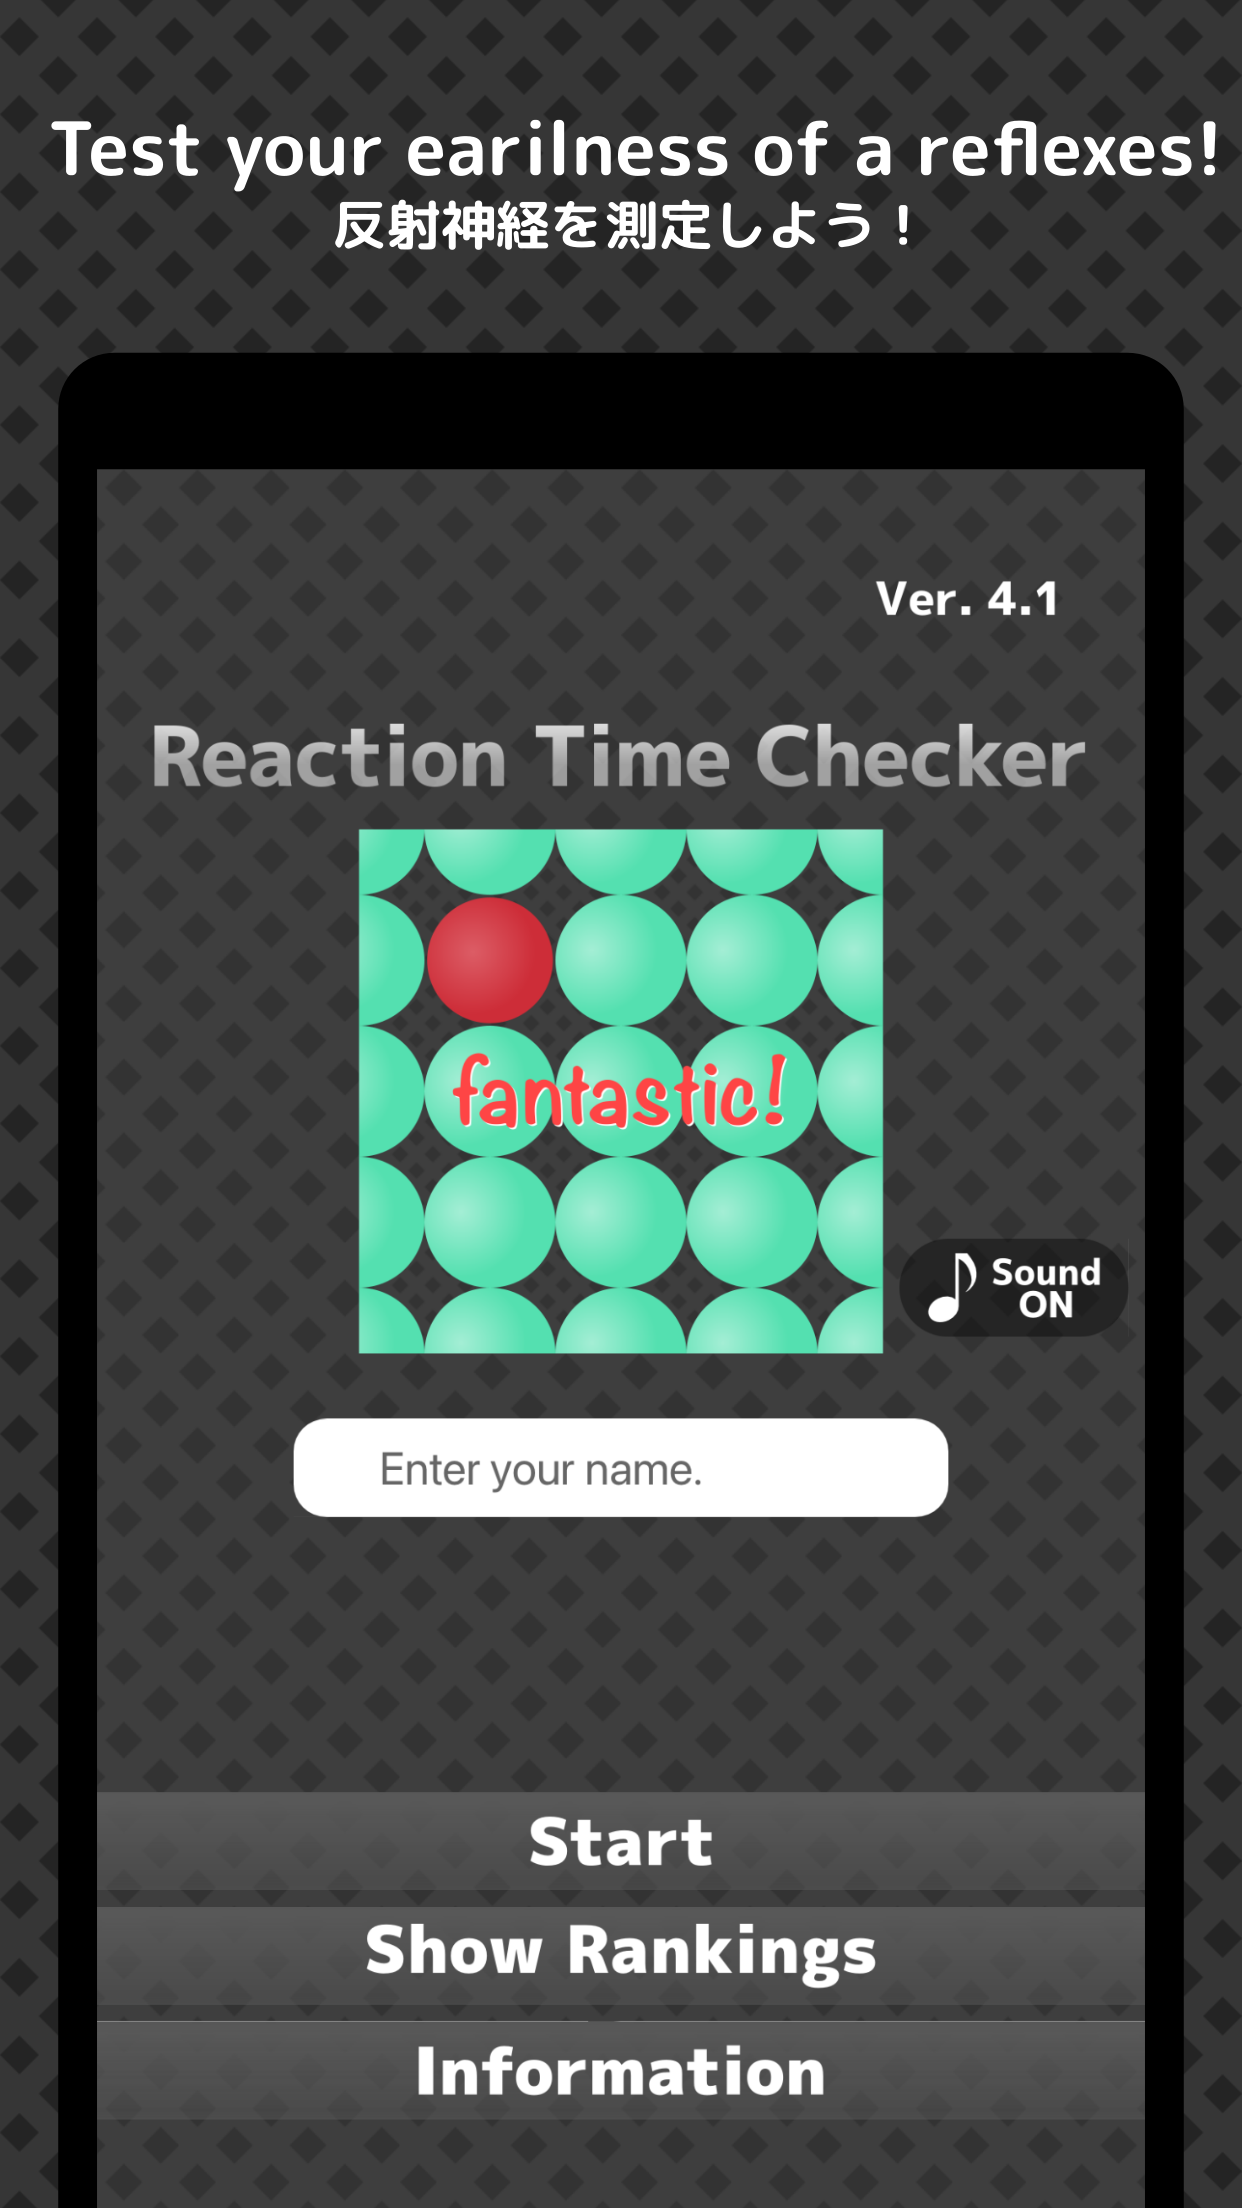 Rolling Beauty Clock スクリーンショット1 アナログ時計の魅力がもっとアップしますように…と願いを込めて誕生したゲームアプリ！